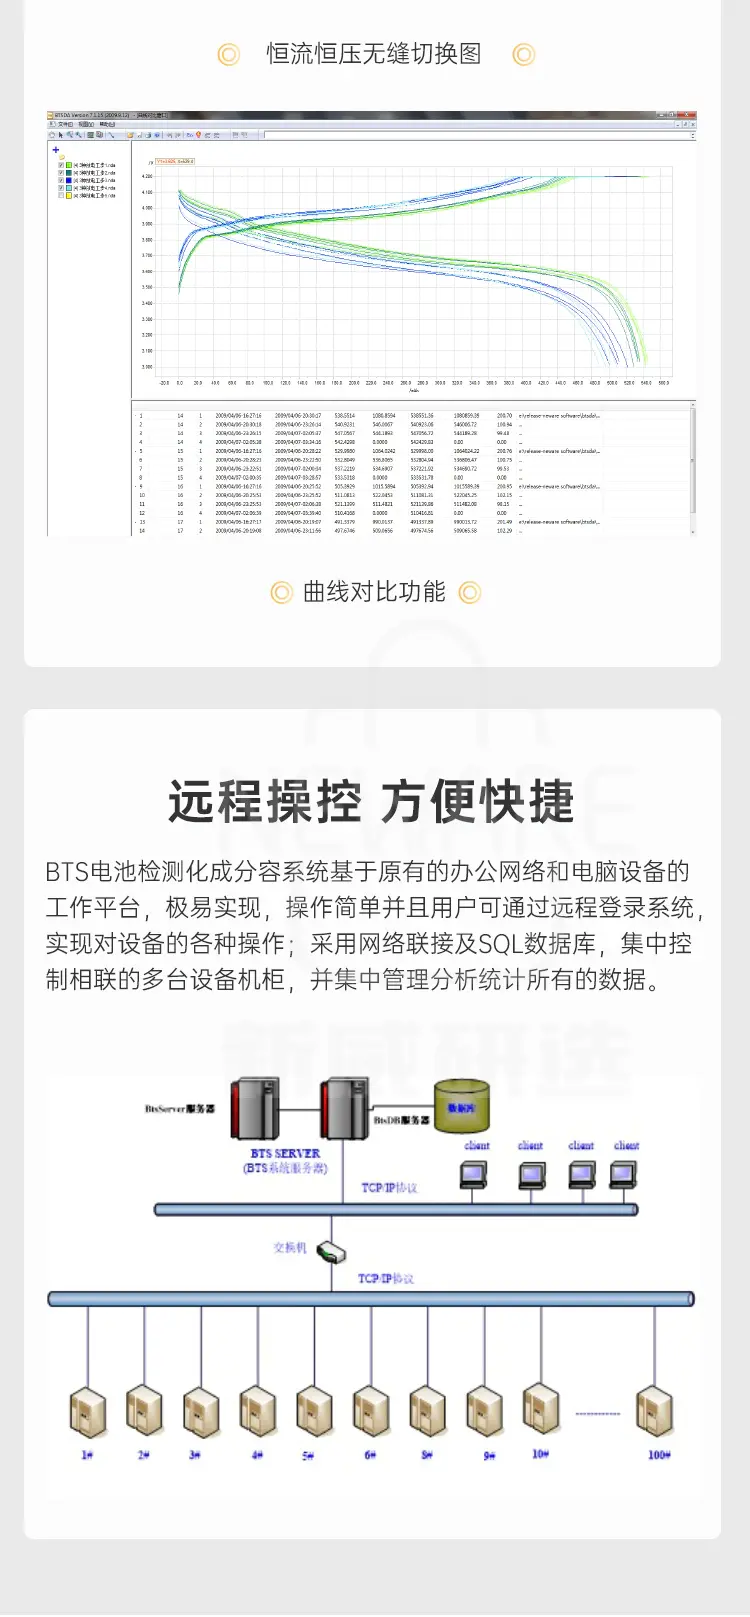 动力电池检测系统CE-6008n-100V100A-H商品介绍8